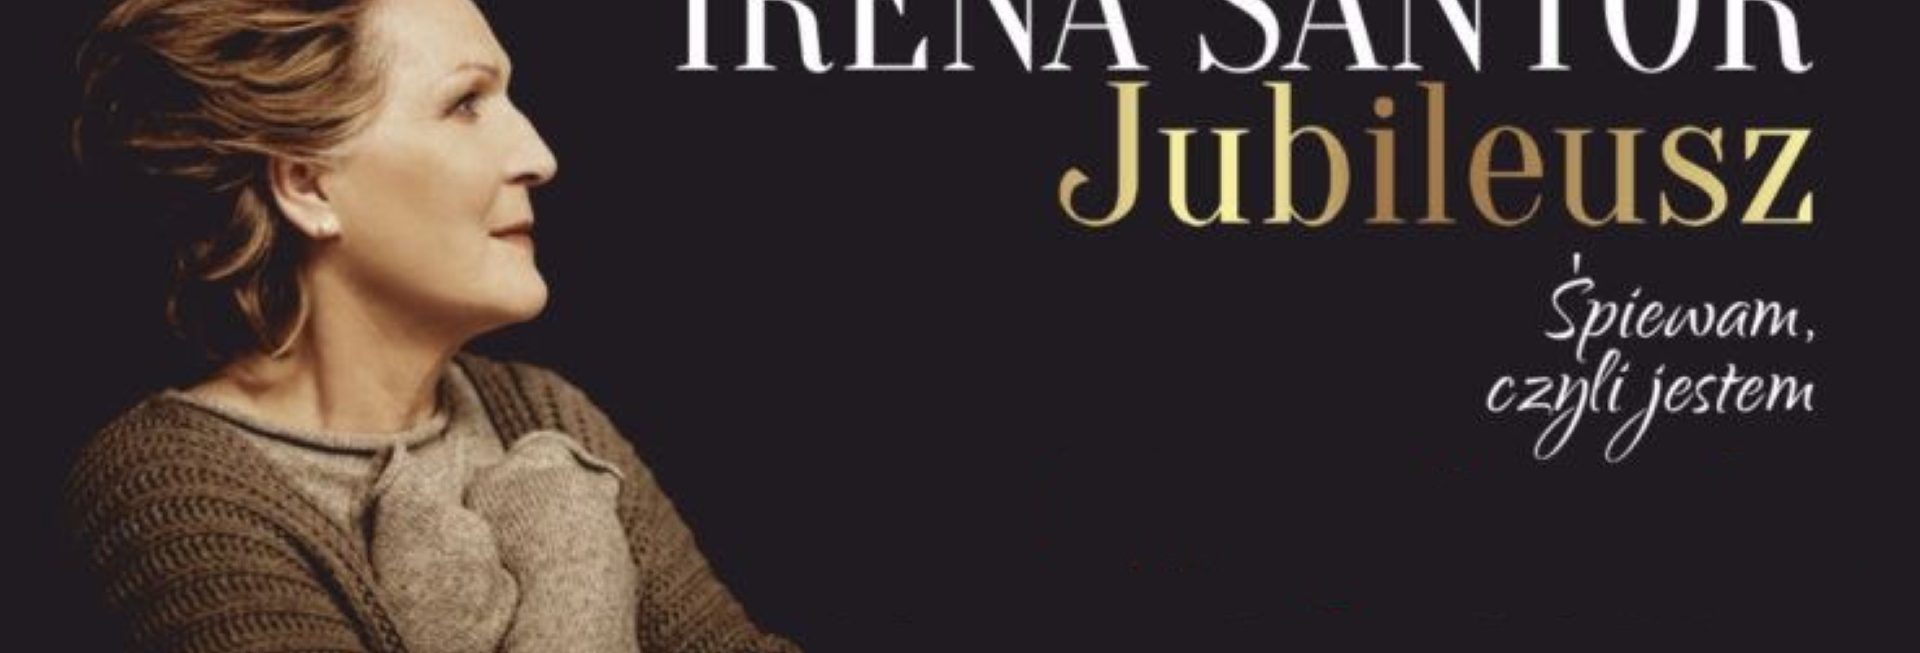 Zdjęcie - plakat na którym jest widoczna na czarnym tle postać piosenkarki Ireny Santor oraz napis z informacją zapraszający na koncert Jubileusz "Śpiewam czyli jestem". 